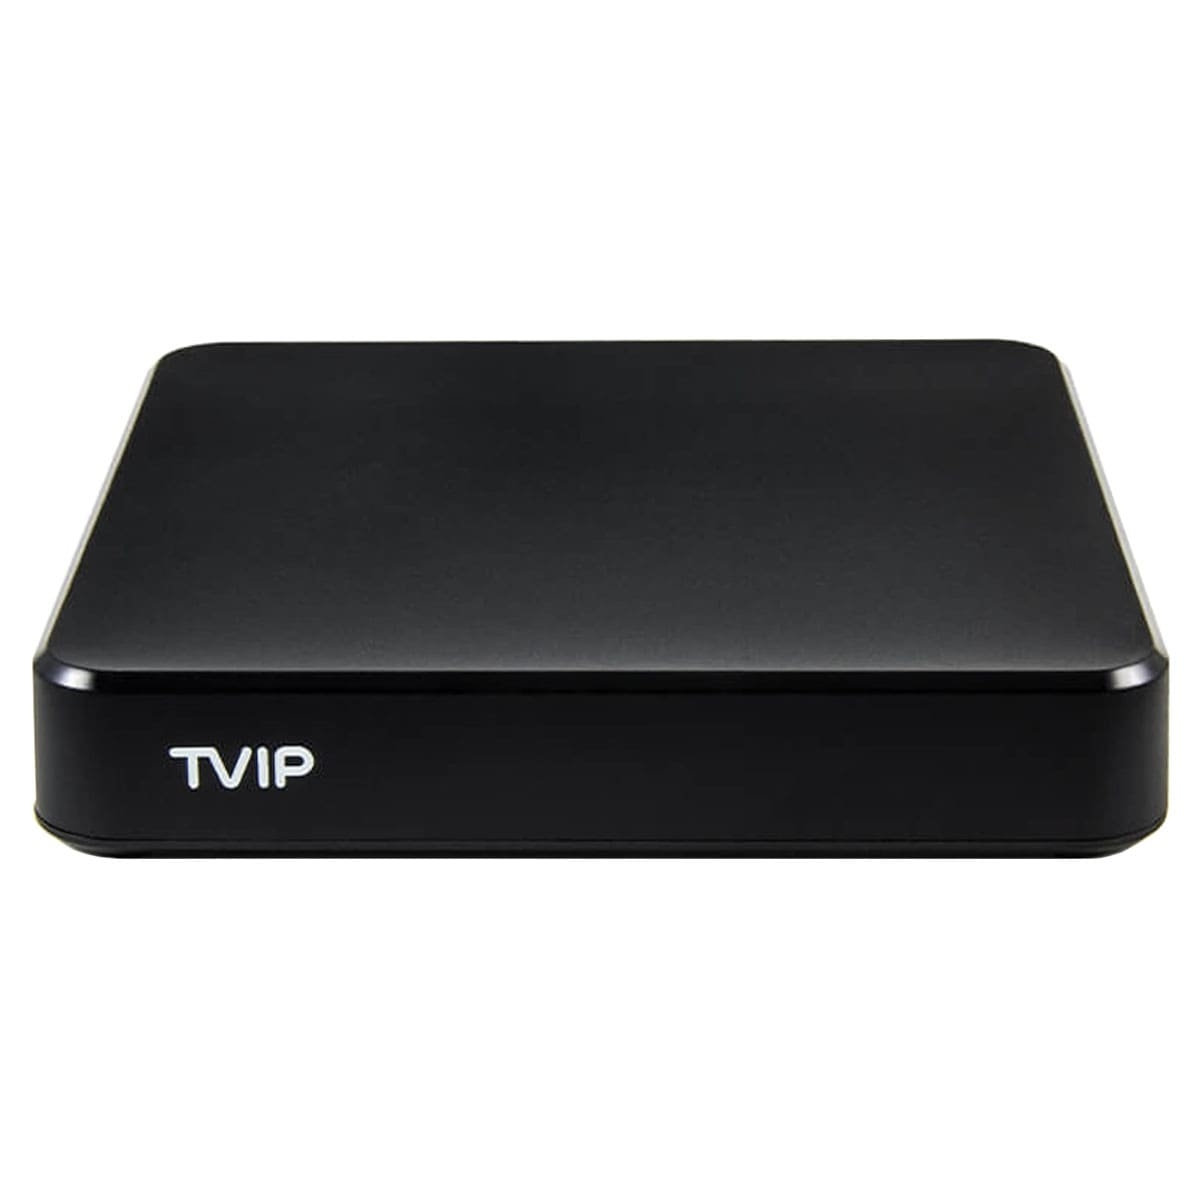 v.705 GB S-Box 8 TVIP